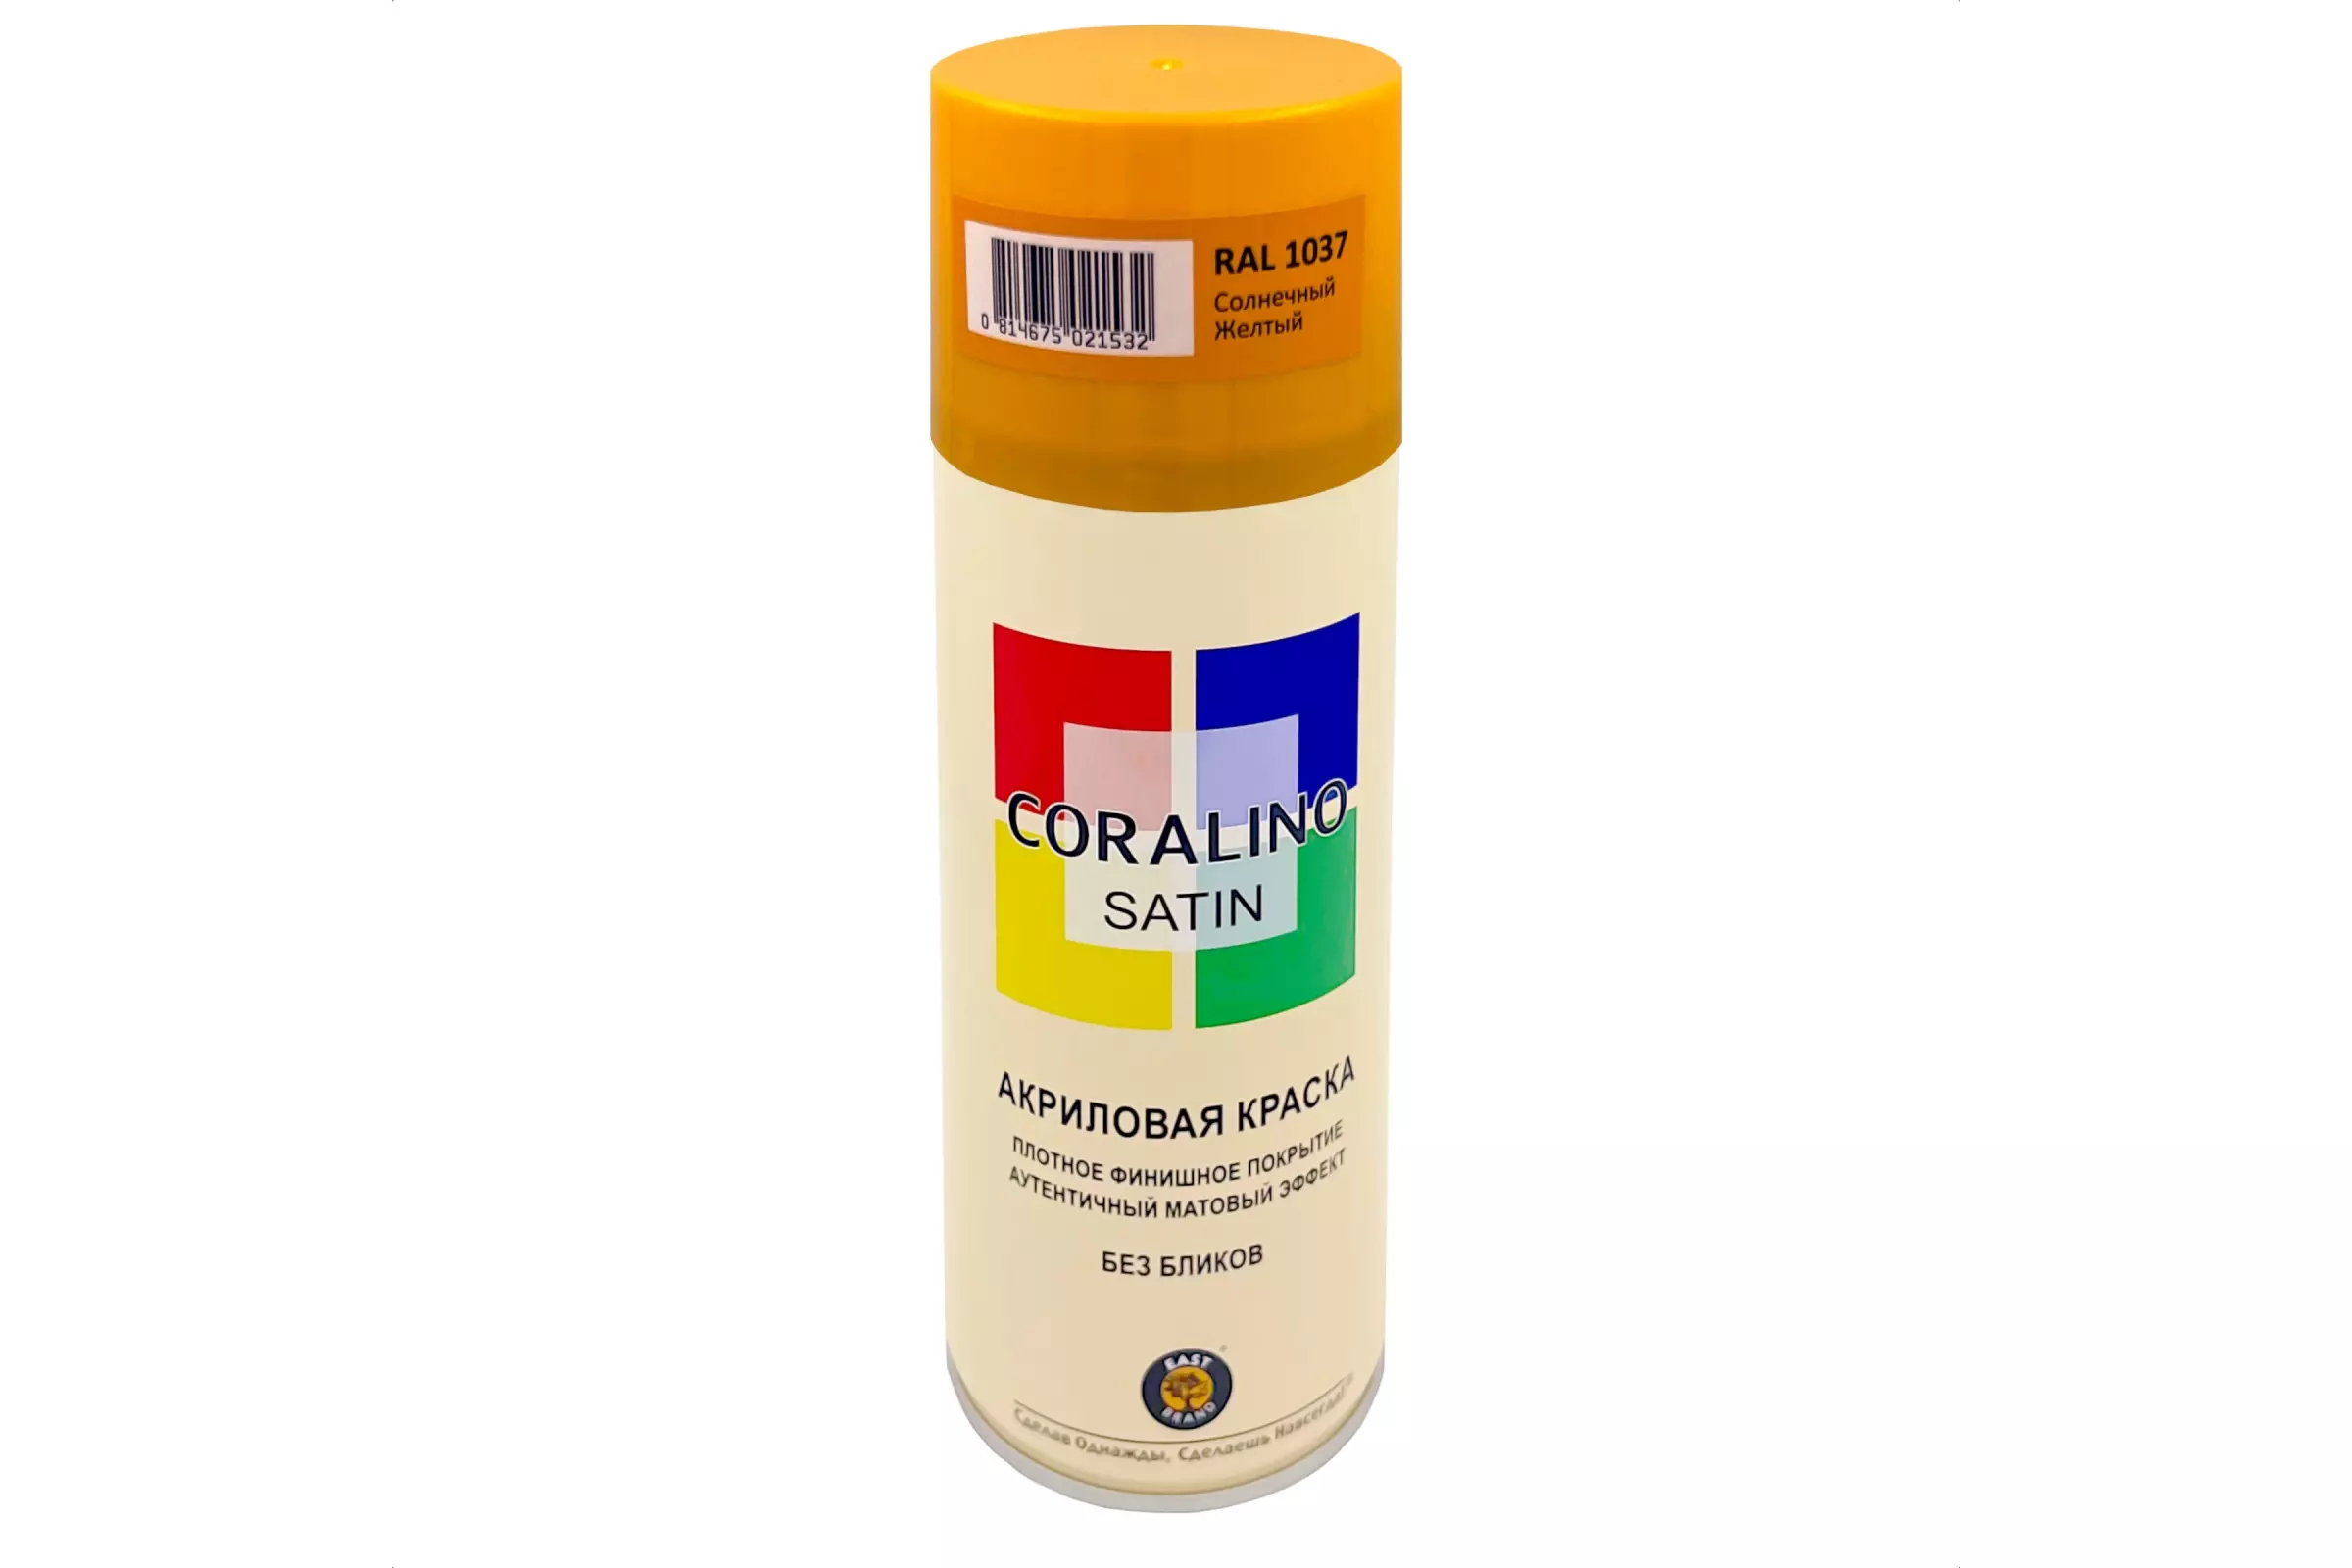 Аэрозольная краска RAL 1037 Coralino SATIN 520 мл/200 г солнечный желтый полуматовый CS1037